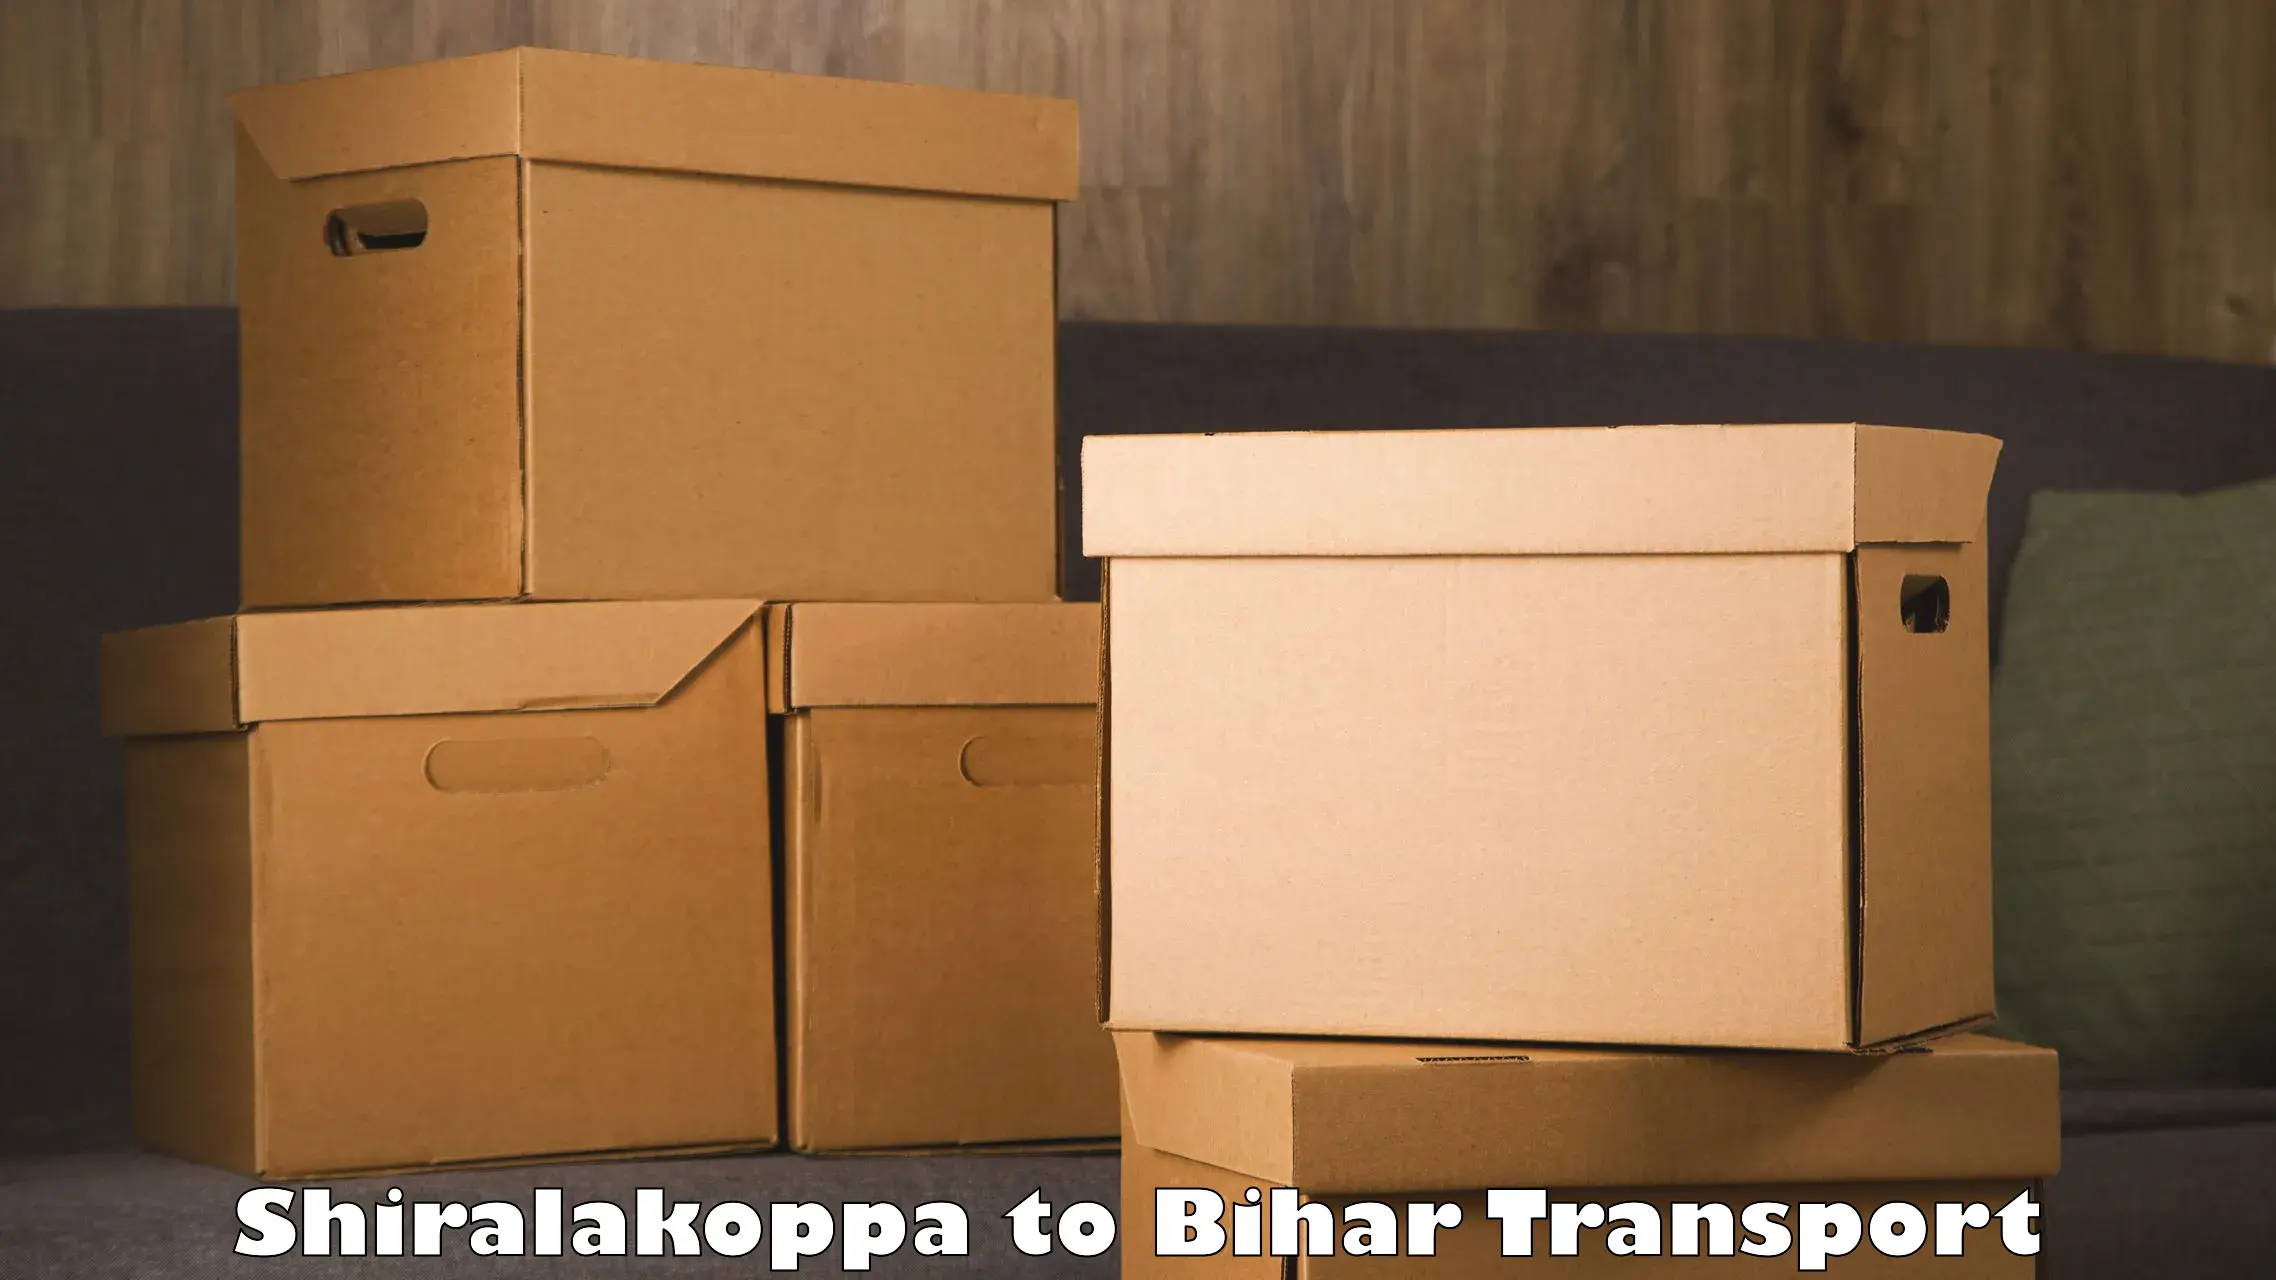 Cargo transport services Shiralakoppa to Barhiya